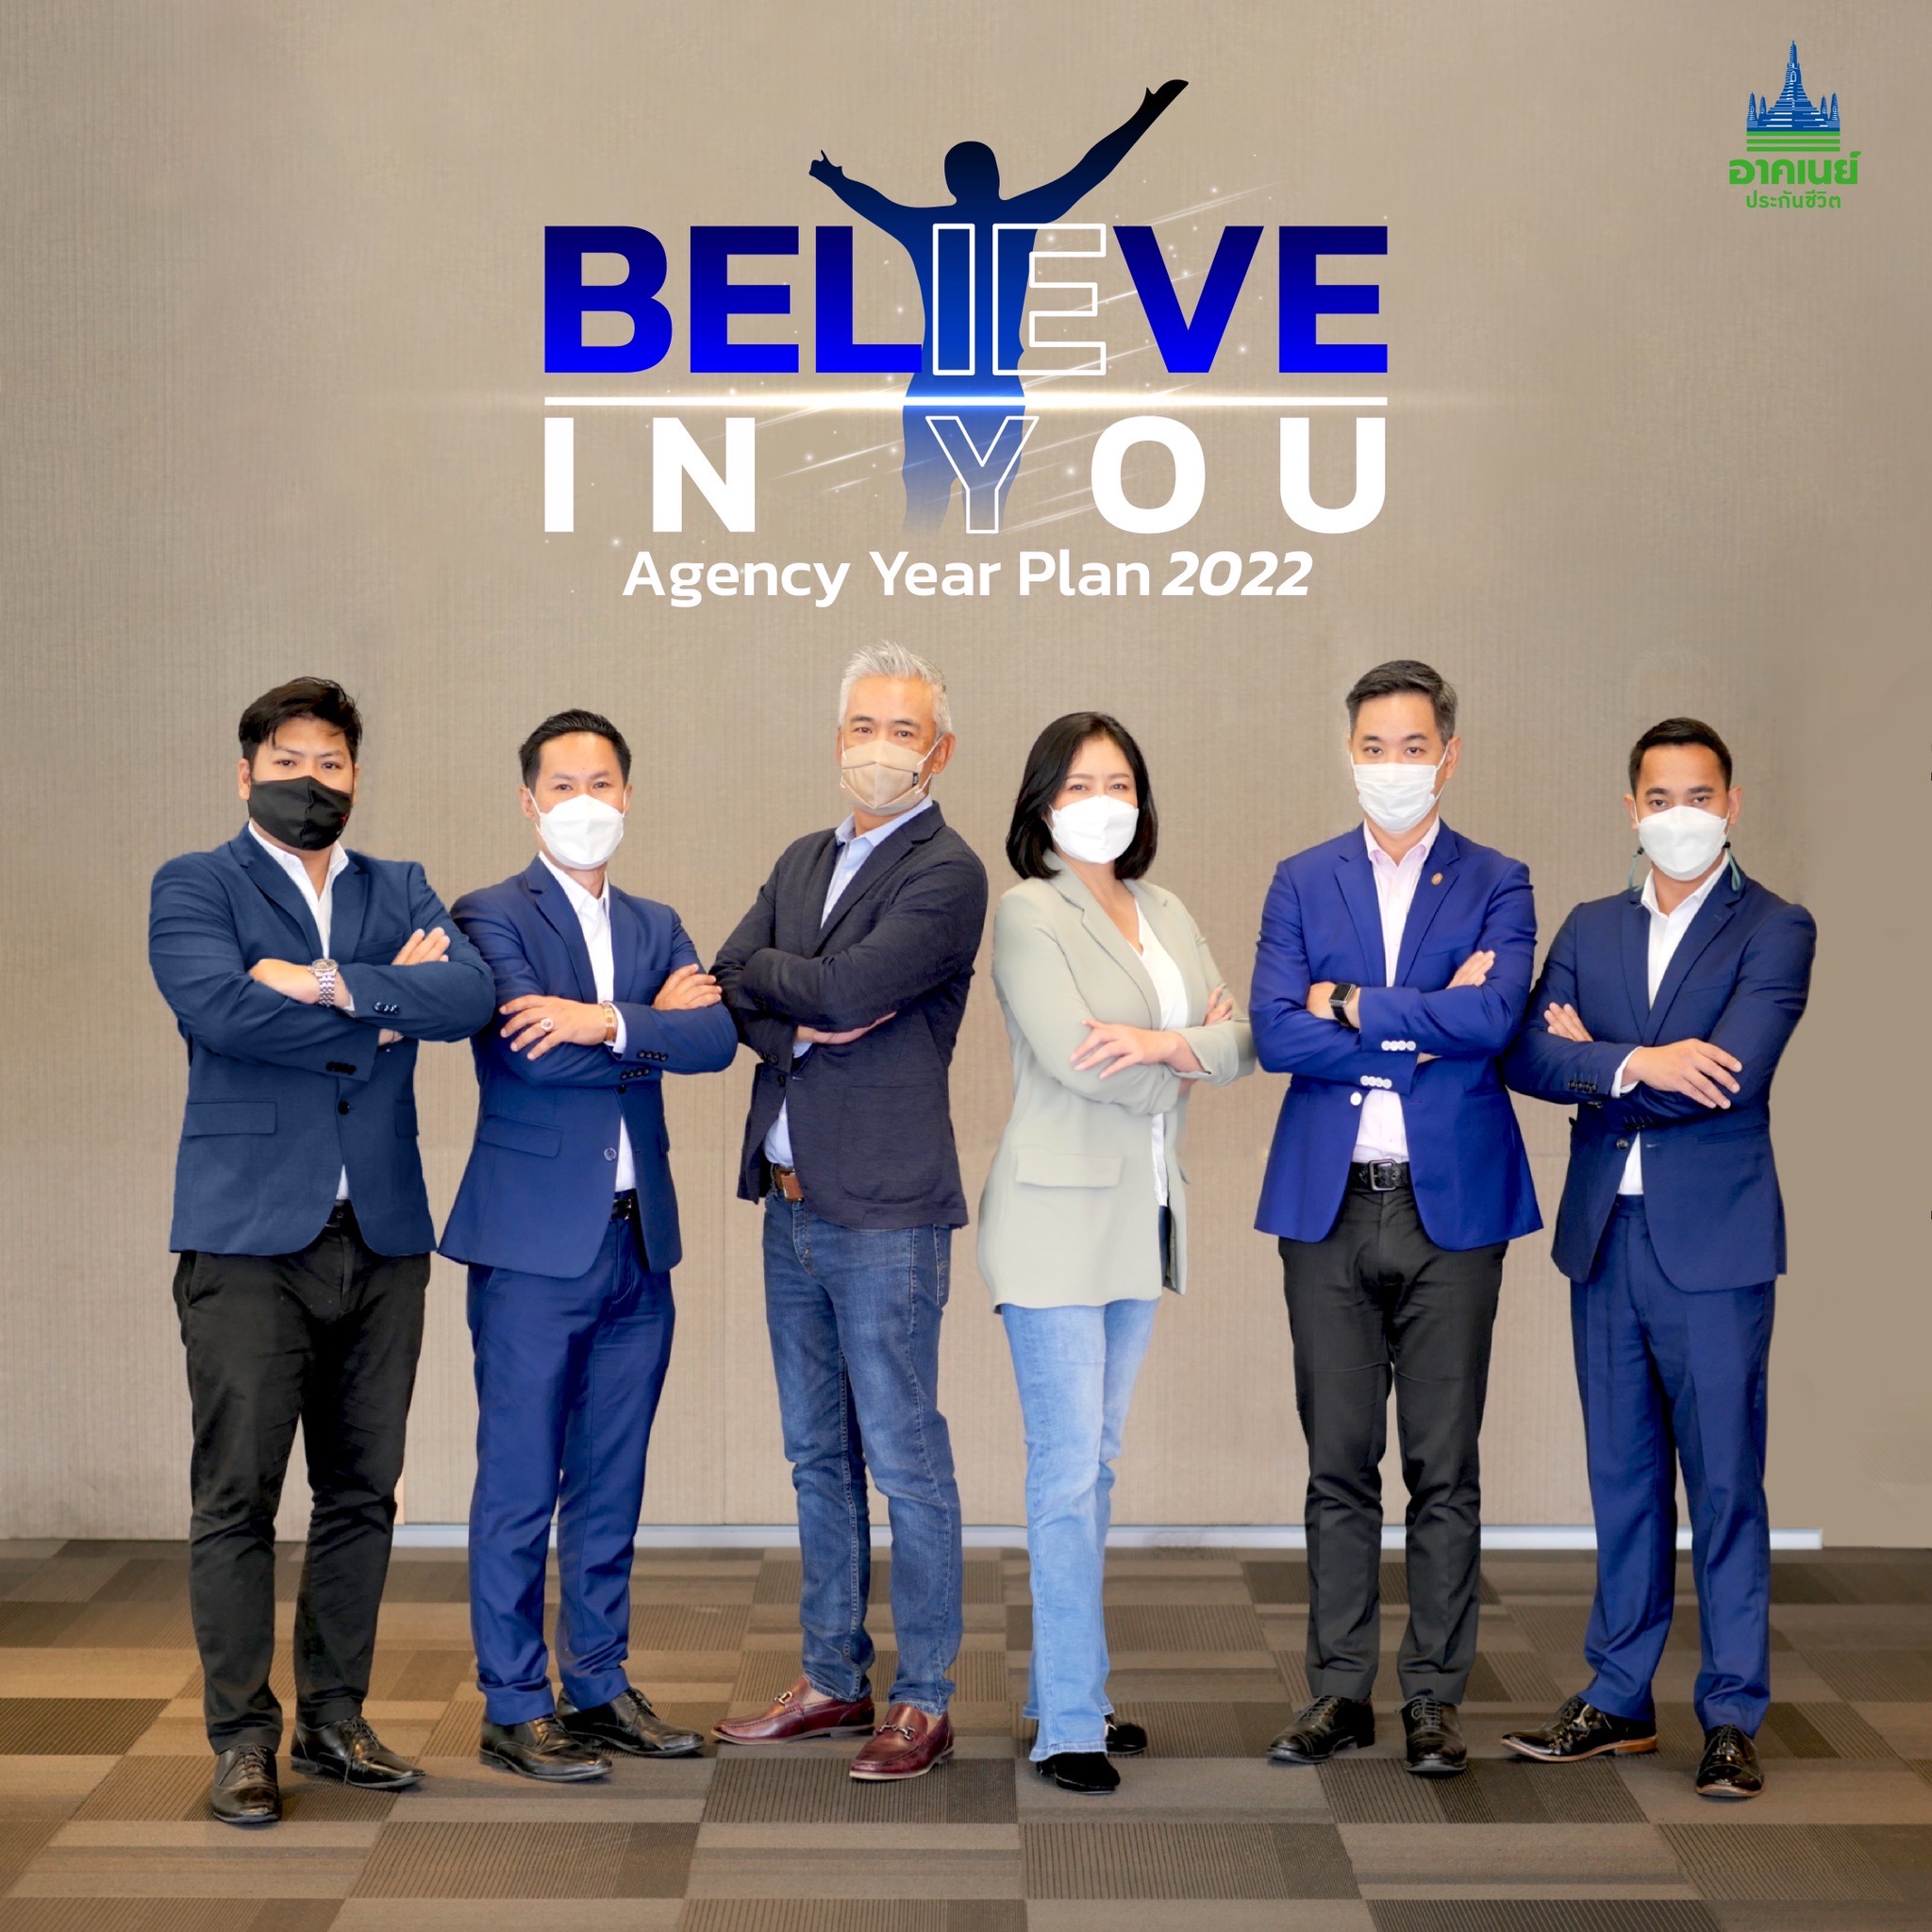 อาคเนย์ประกันชีวิต คิกออฟงาน Agency Year Plan 2022  ปลุกพลังทีมขาย ภายใต้แนวคิด “BELIEVE IN YOU”